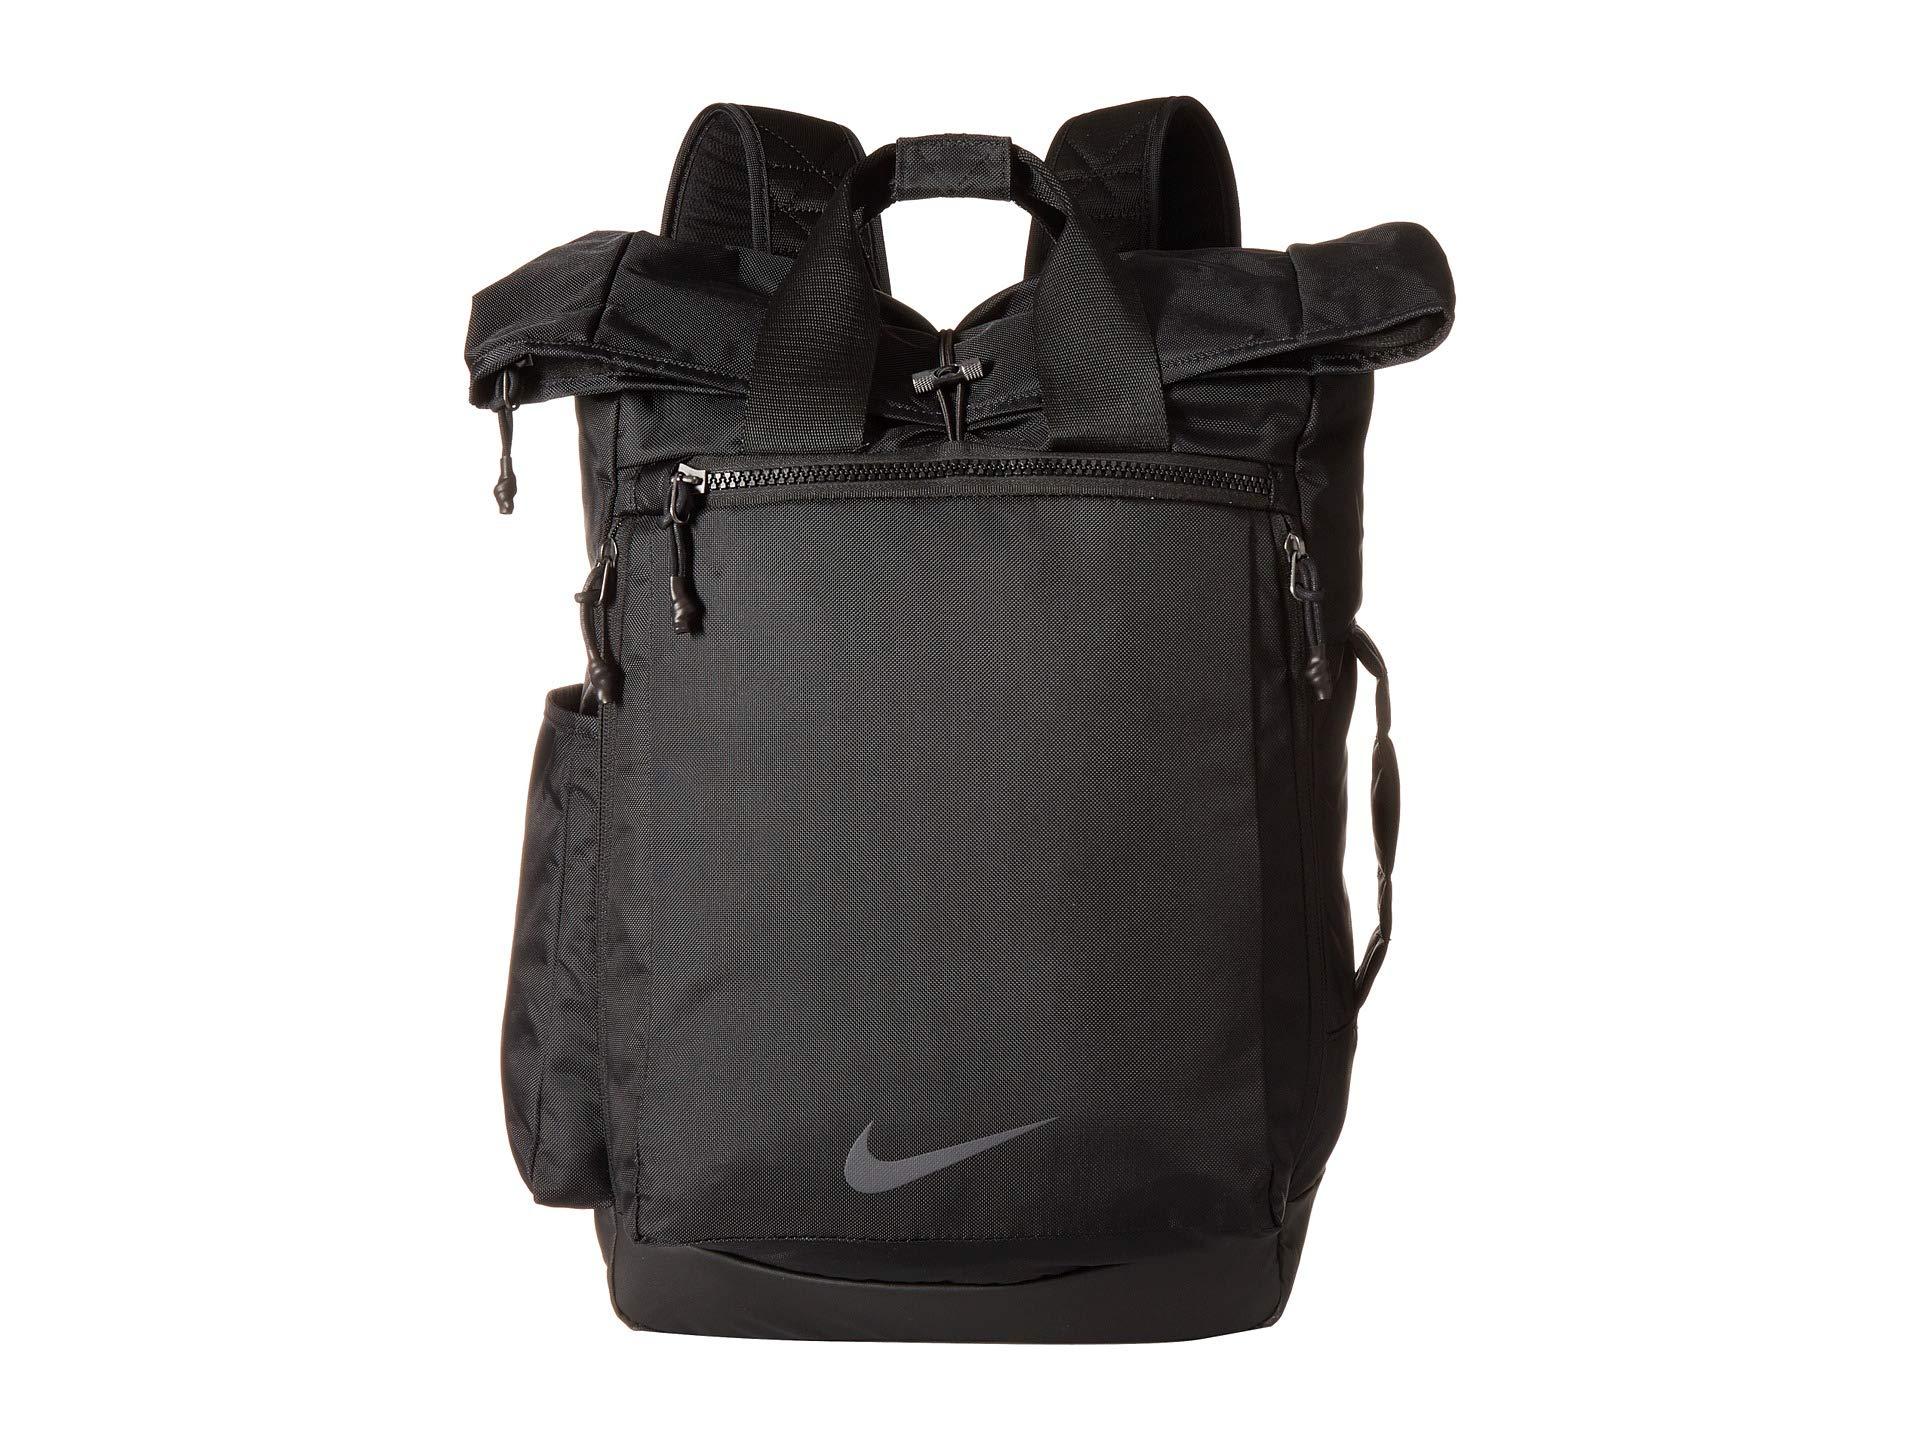 Nike Vapor Energy 2.0 Training Backpack in Black/Black/Black (Black) - Lyst